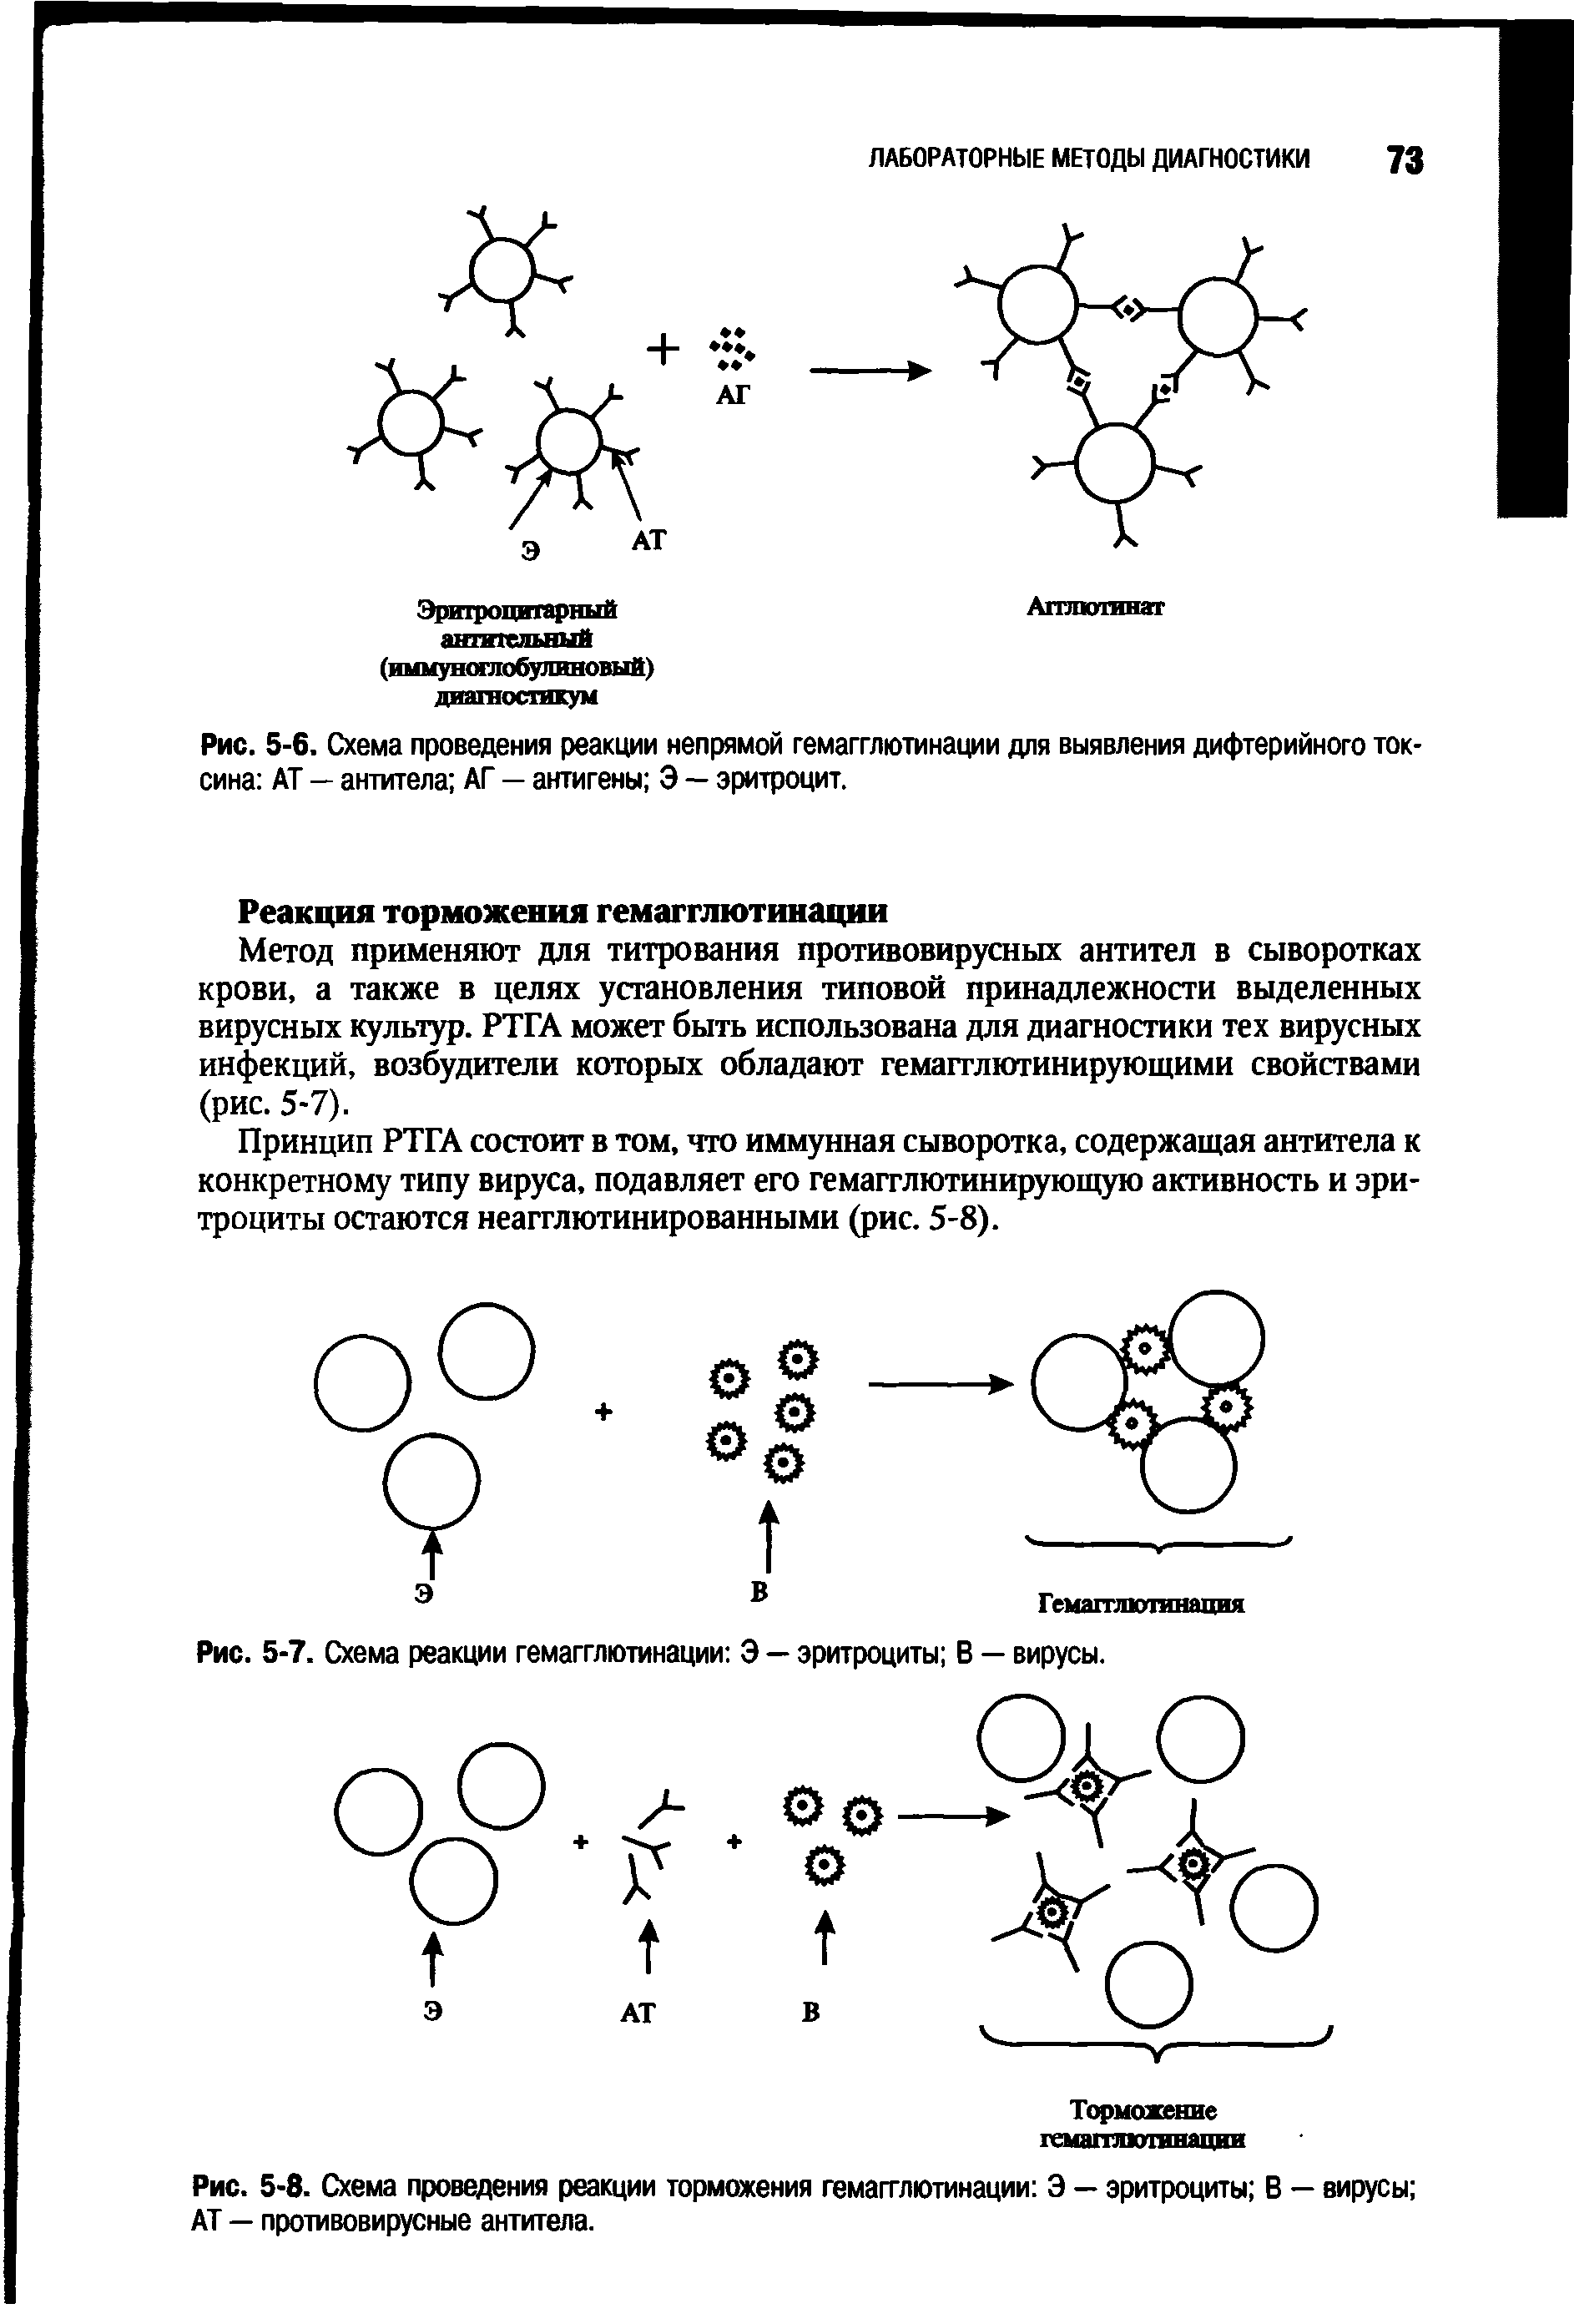 Рис. 5-6. Схема проведения реакции непрямой гемагглютинации для выявления дифтерийного токсина АТ — антитела АГ — антигены Э — эритроцит.